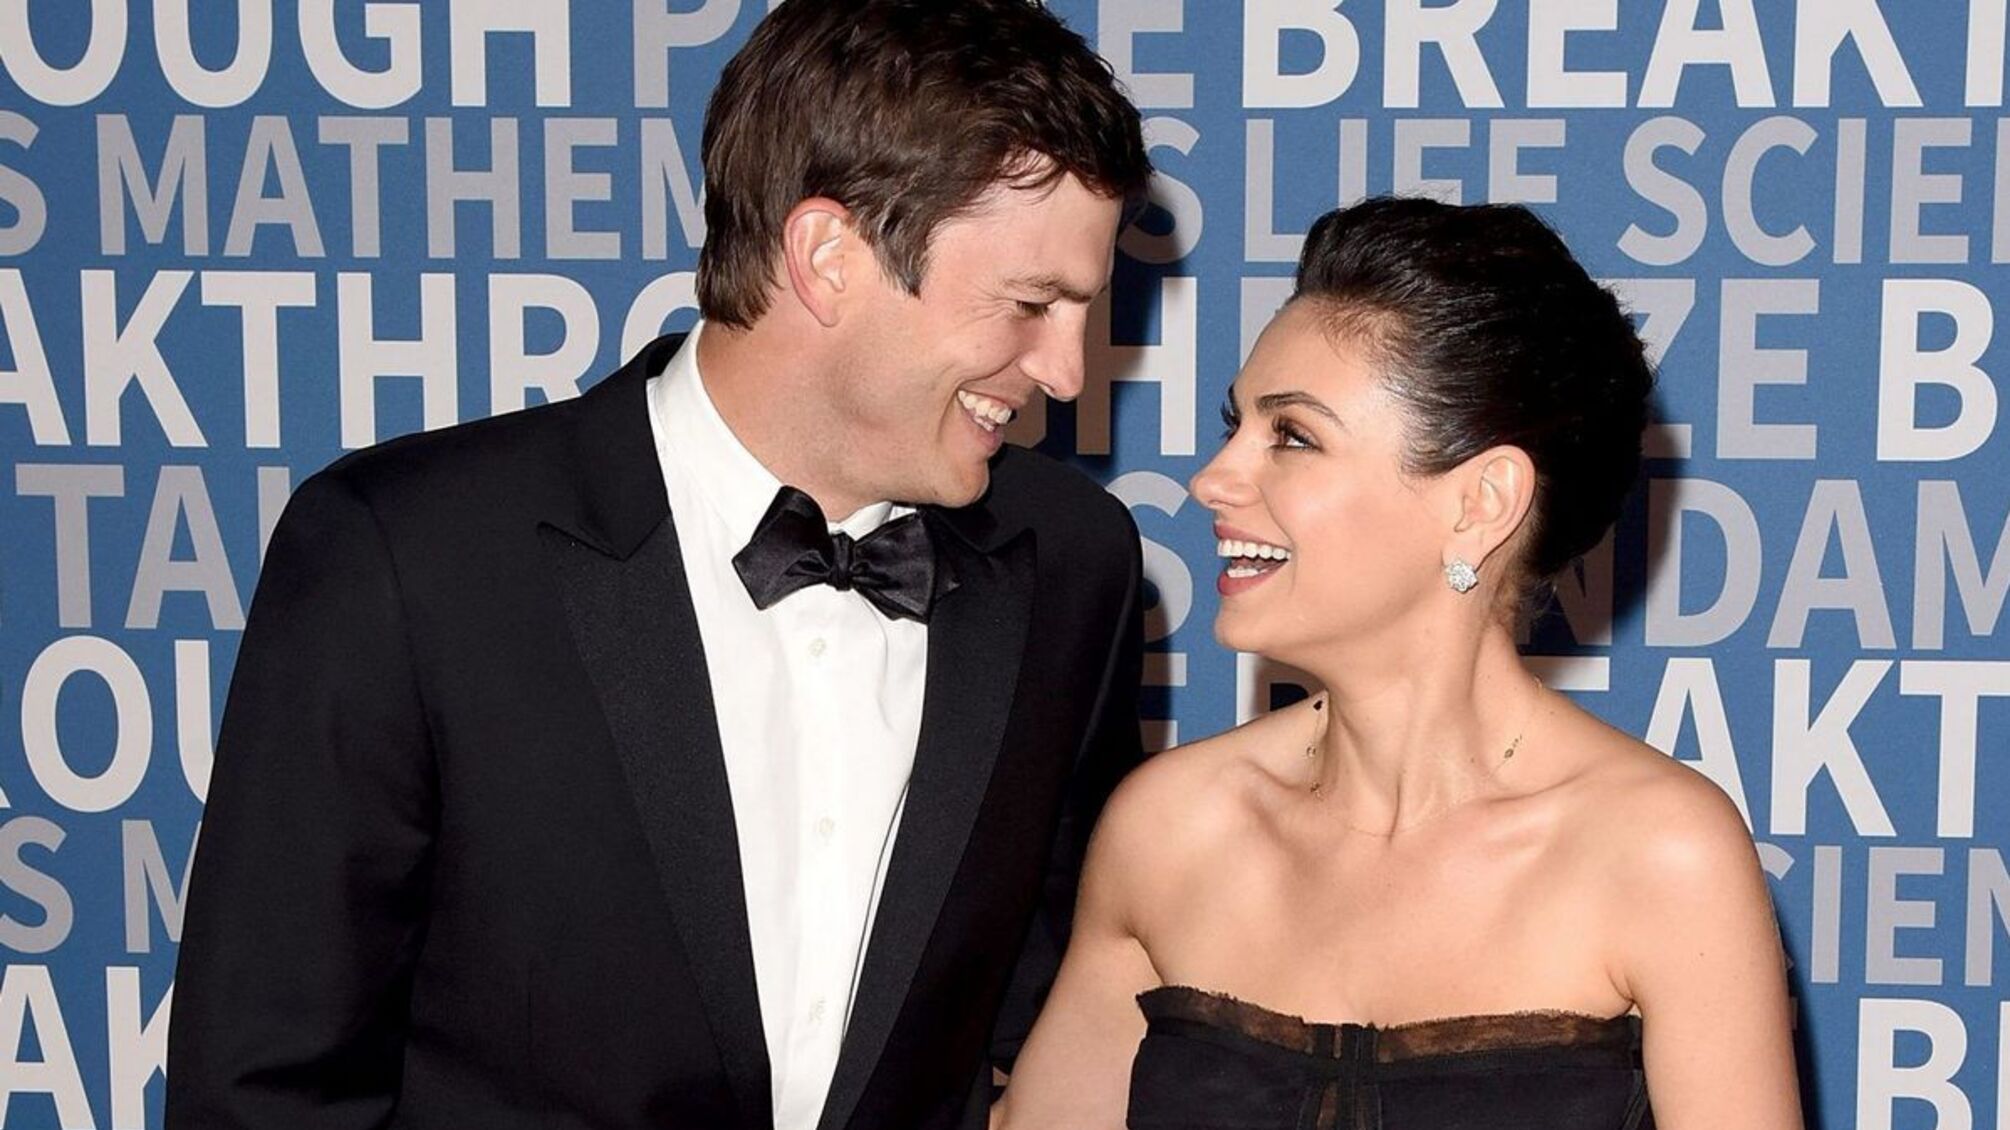 'Я найщасливіша людина': актор Ештон Катчер показав дружину в особливій позі